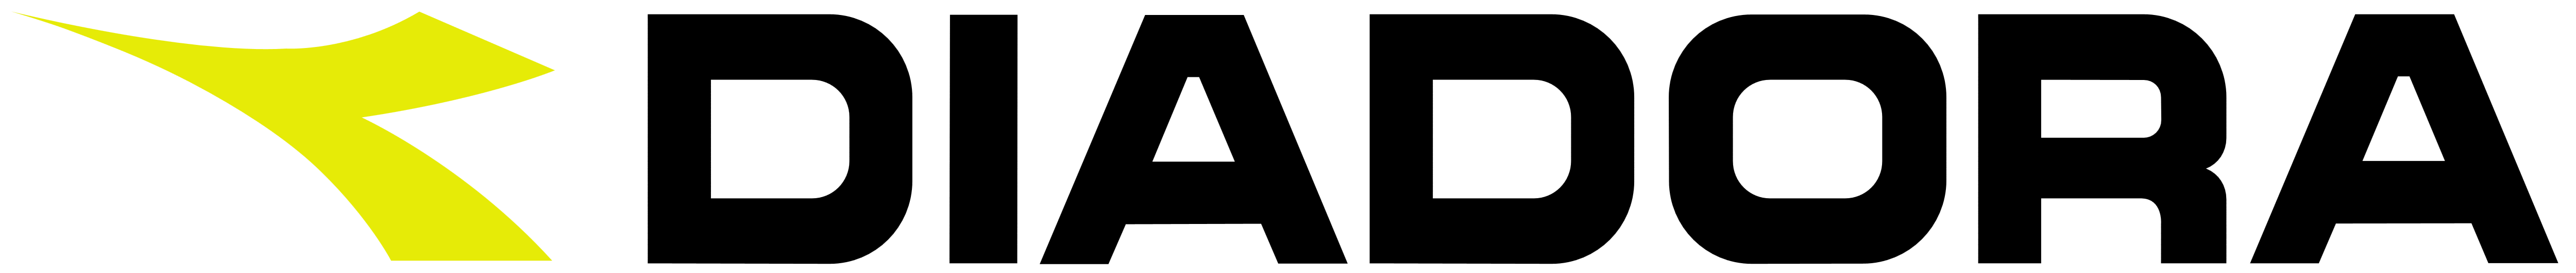 Risultati immagini per diadora logo